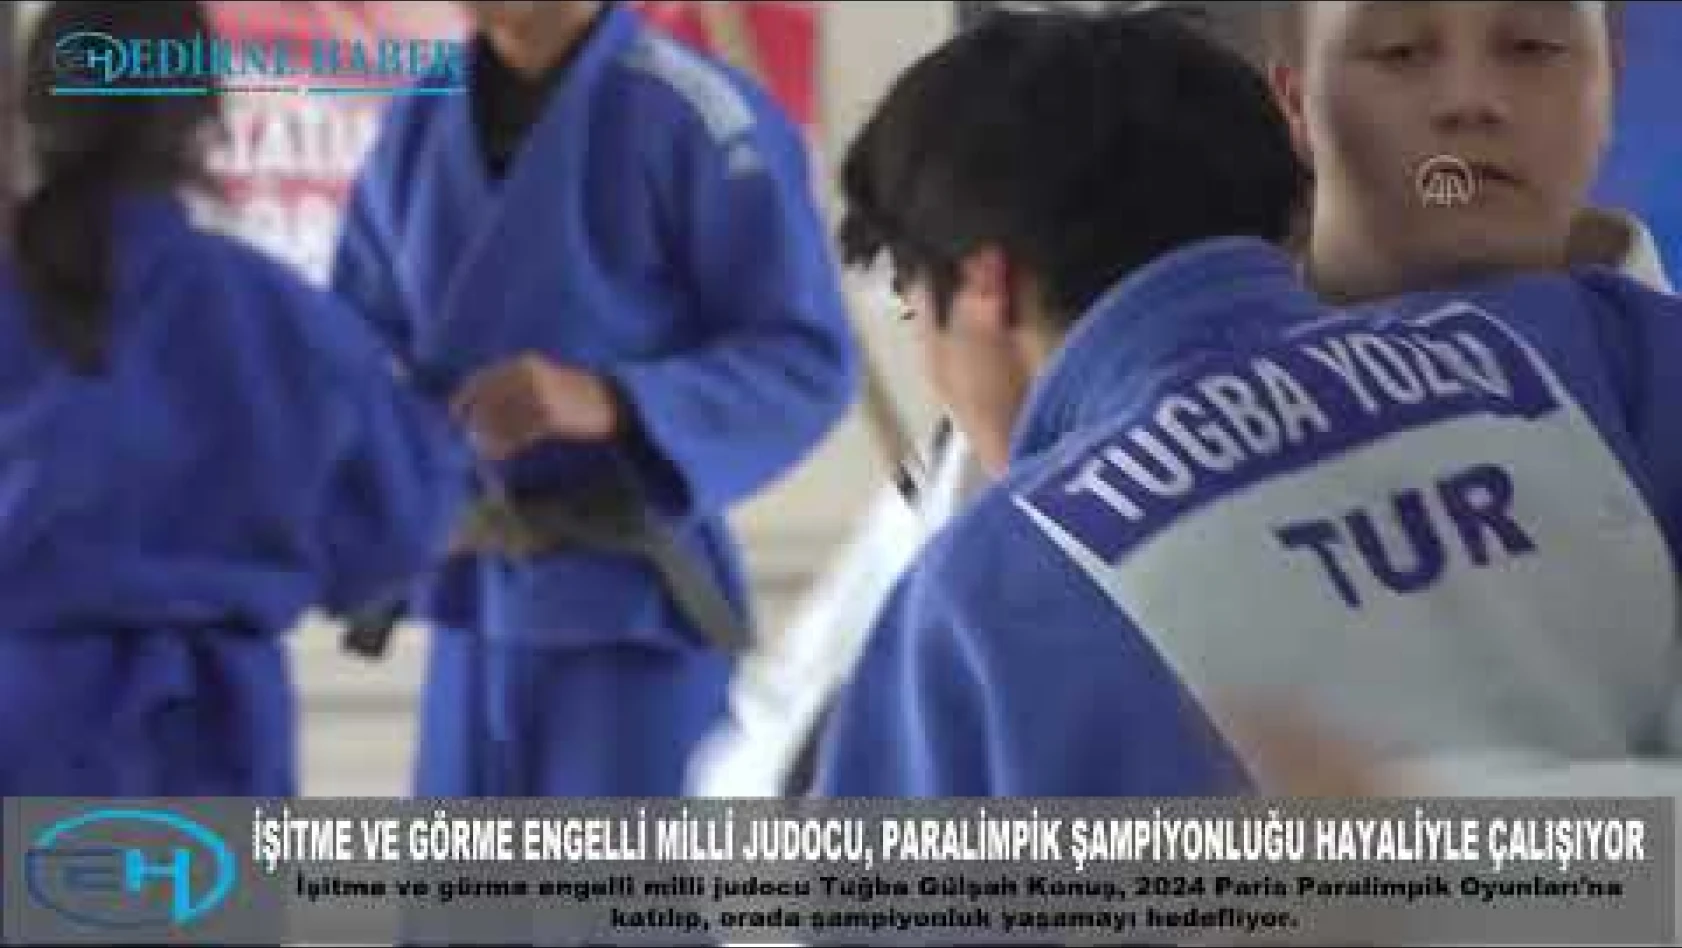 İşitme ve görme engelli milli judocu, Paralimpik Şampiyonluğu hayaliyle çalışıyor